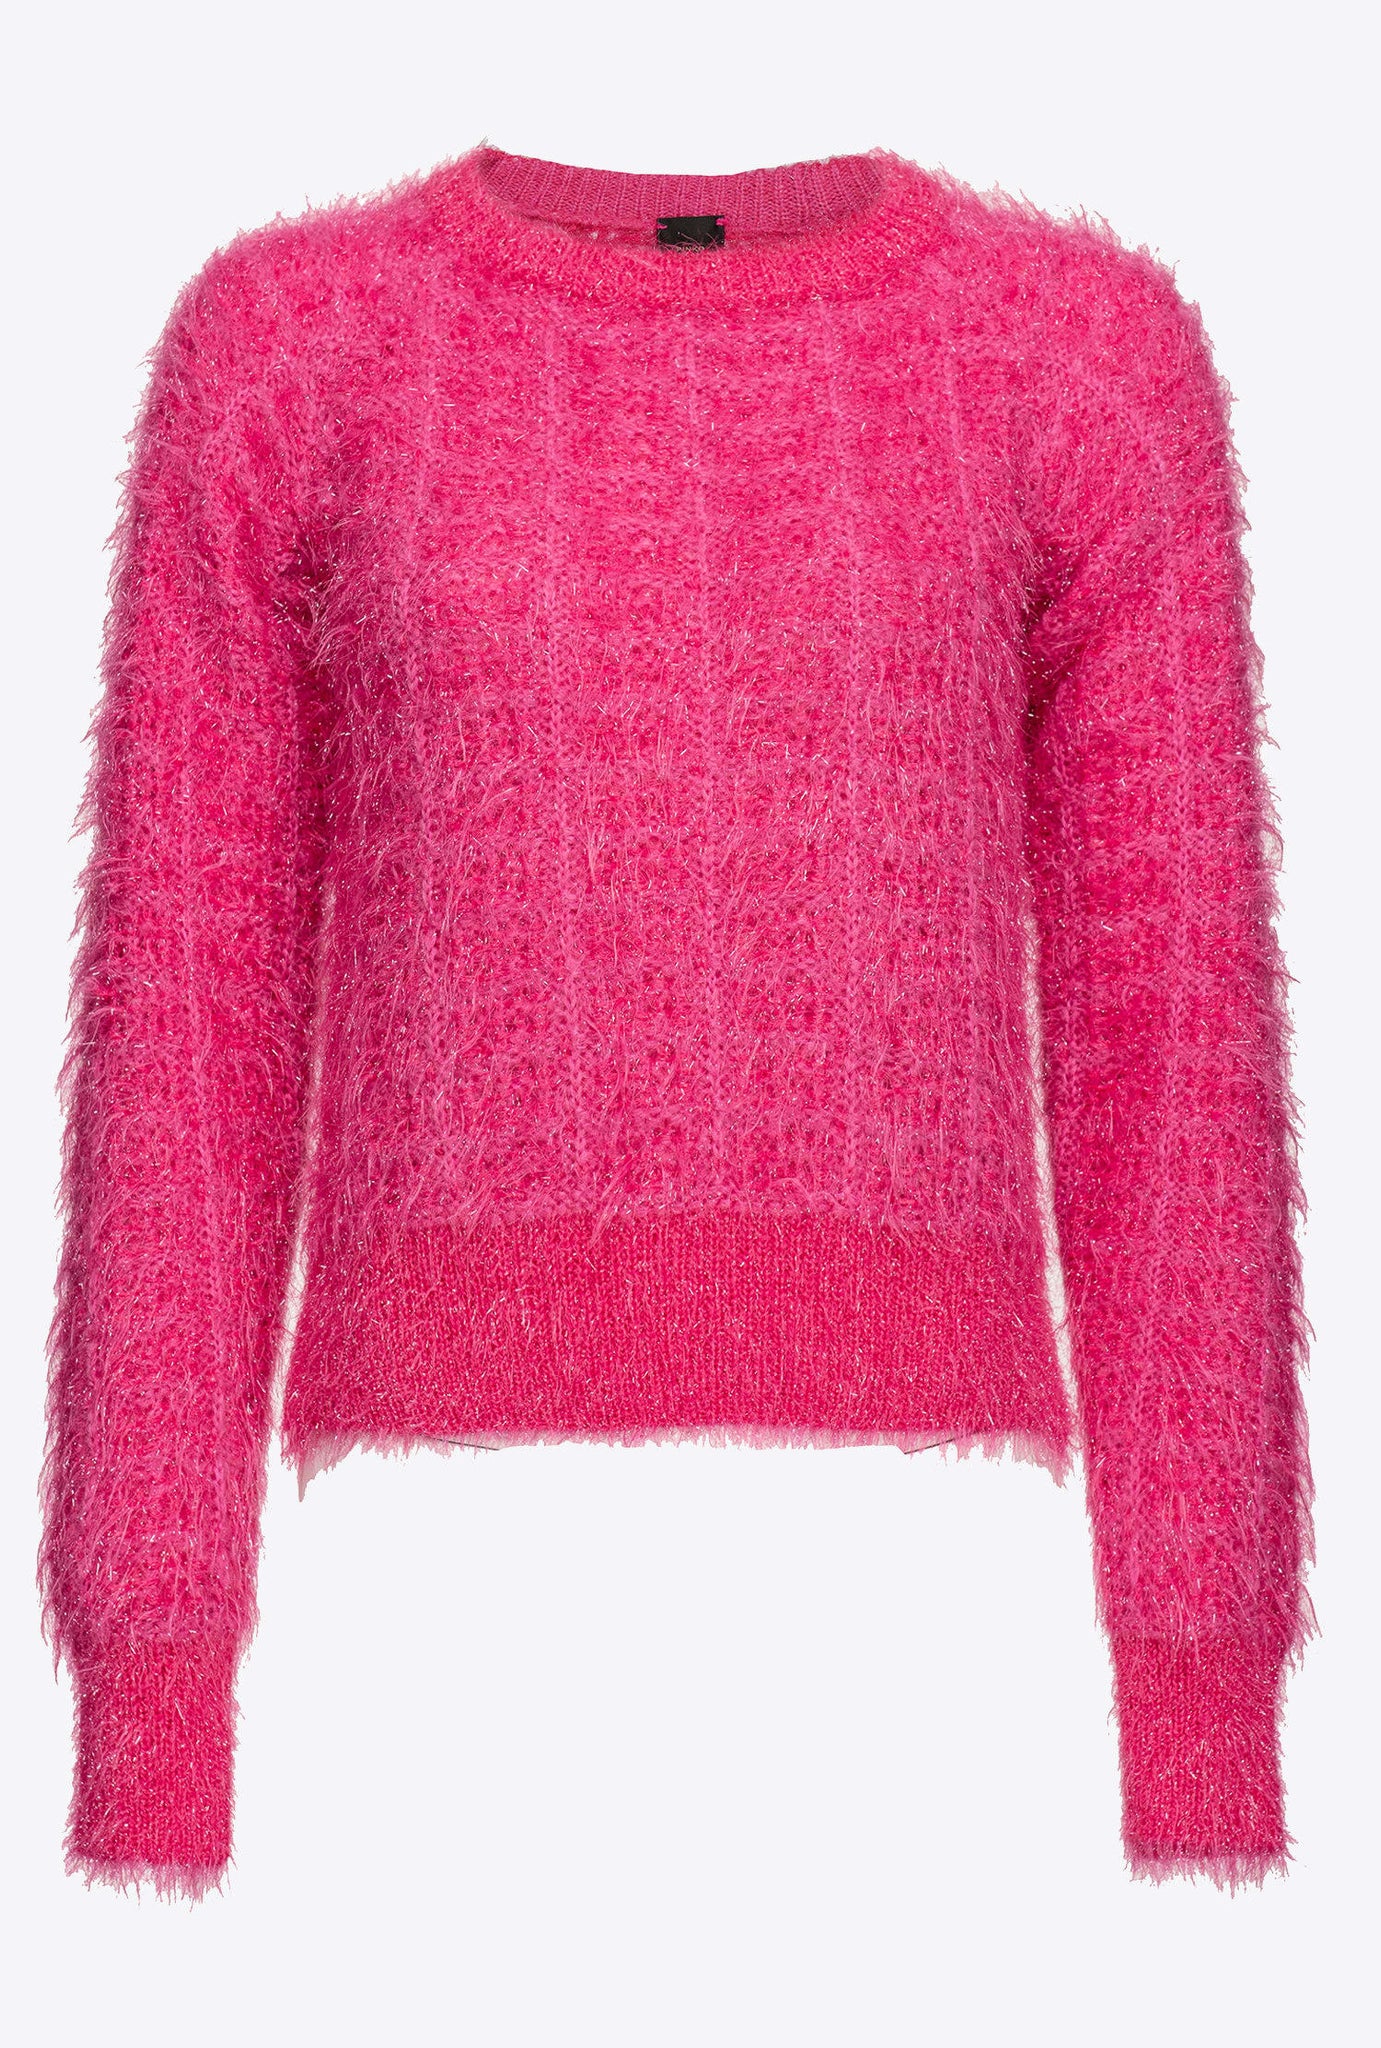 Pullover in Misto Alpaca Pinko / Fucsia - Ideal Moda